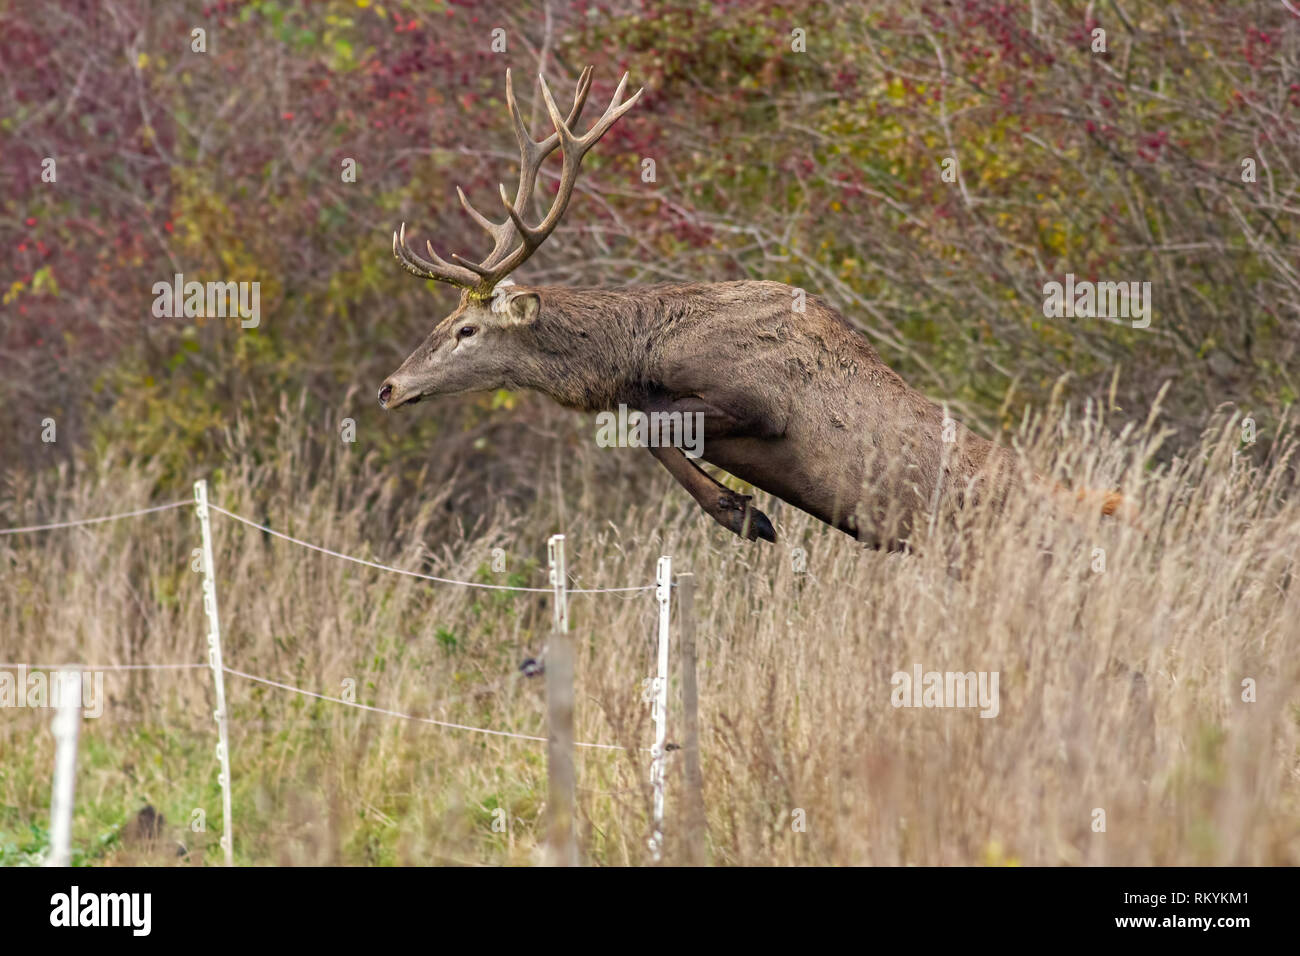 Red Deer, Cervus elaphus, stag jumping over fence capturé l'air. Concept de migration des animaux sauvages sur les champs agricoles. Concept d'un mammifère overc Banque D'Images